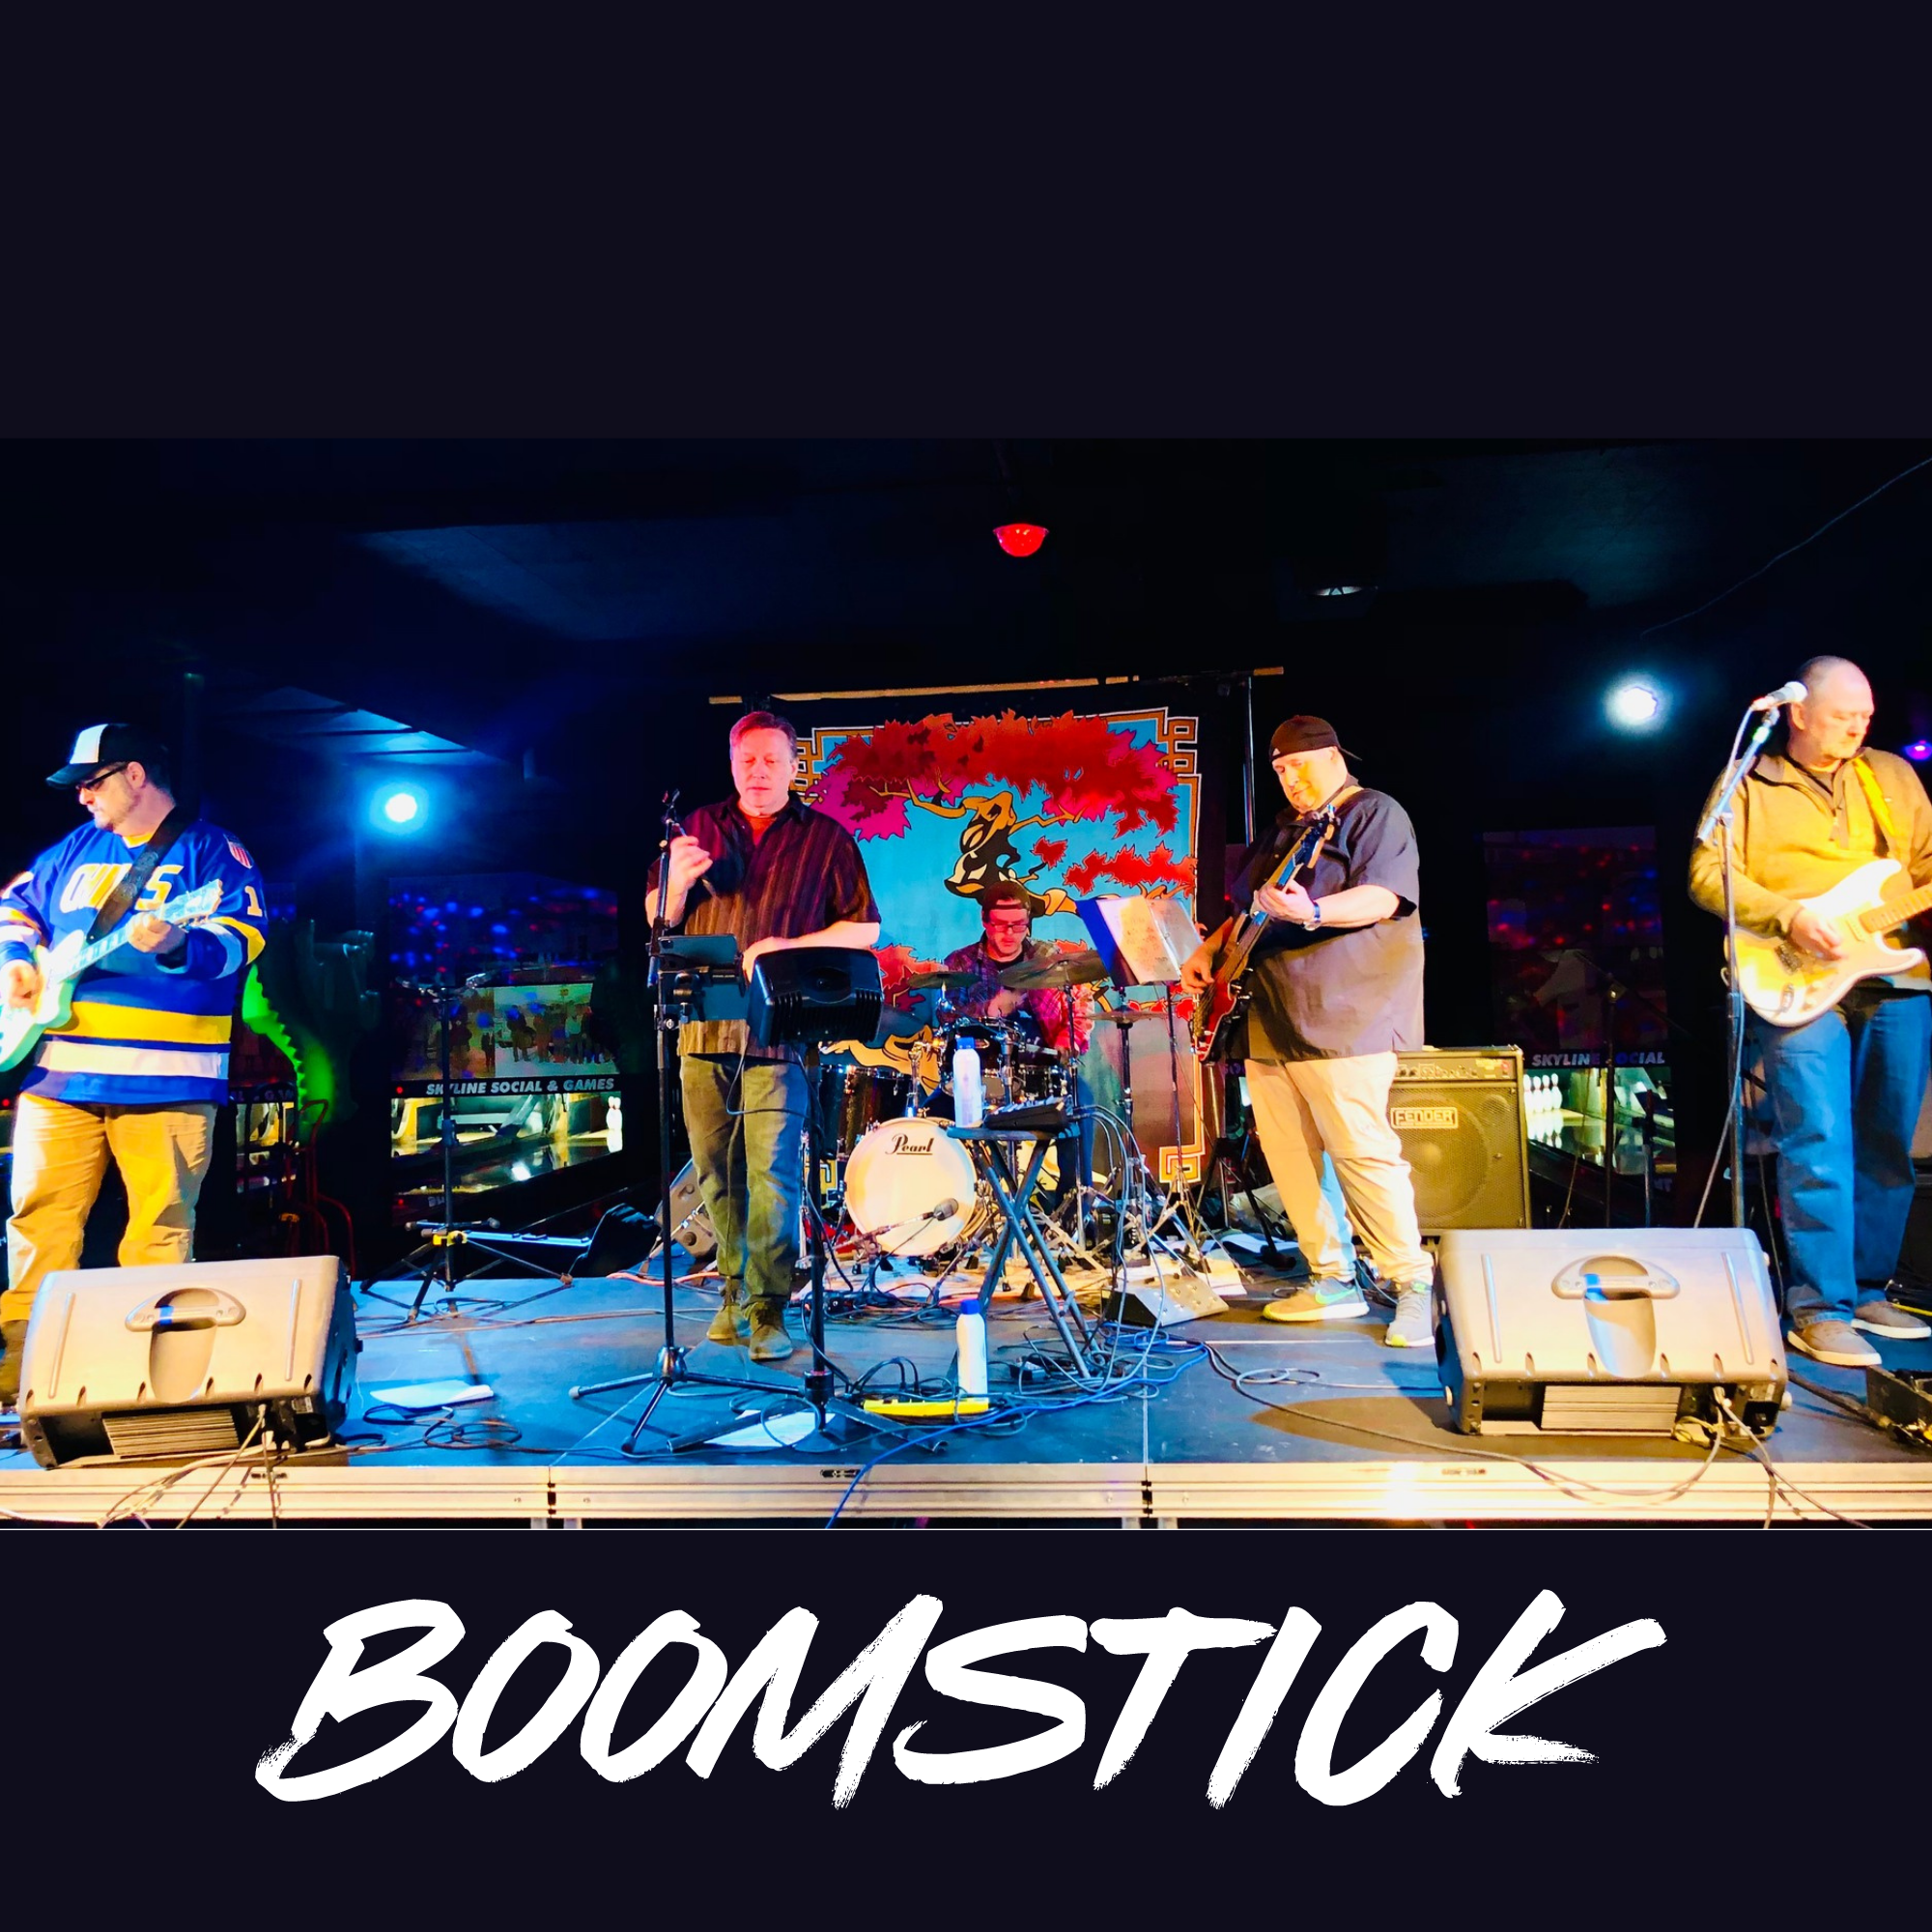 Boomstick